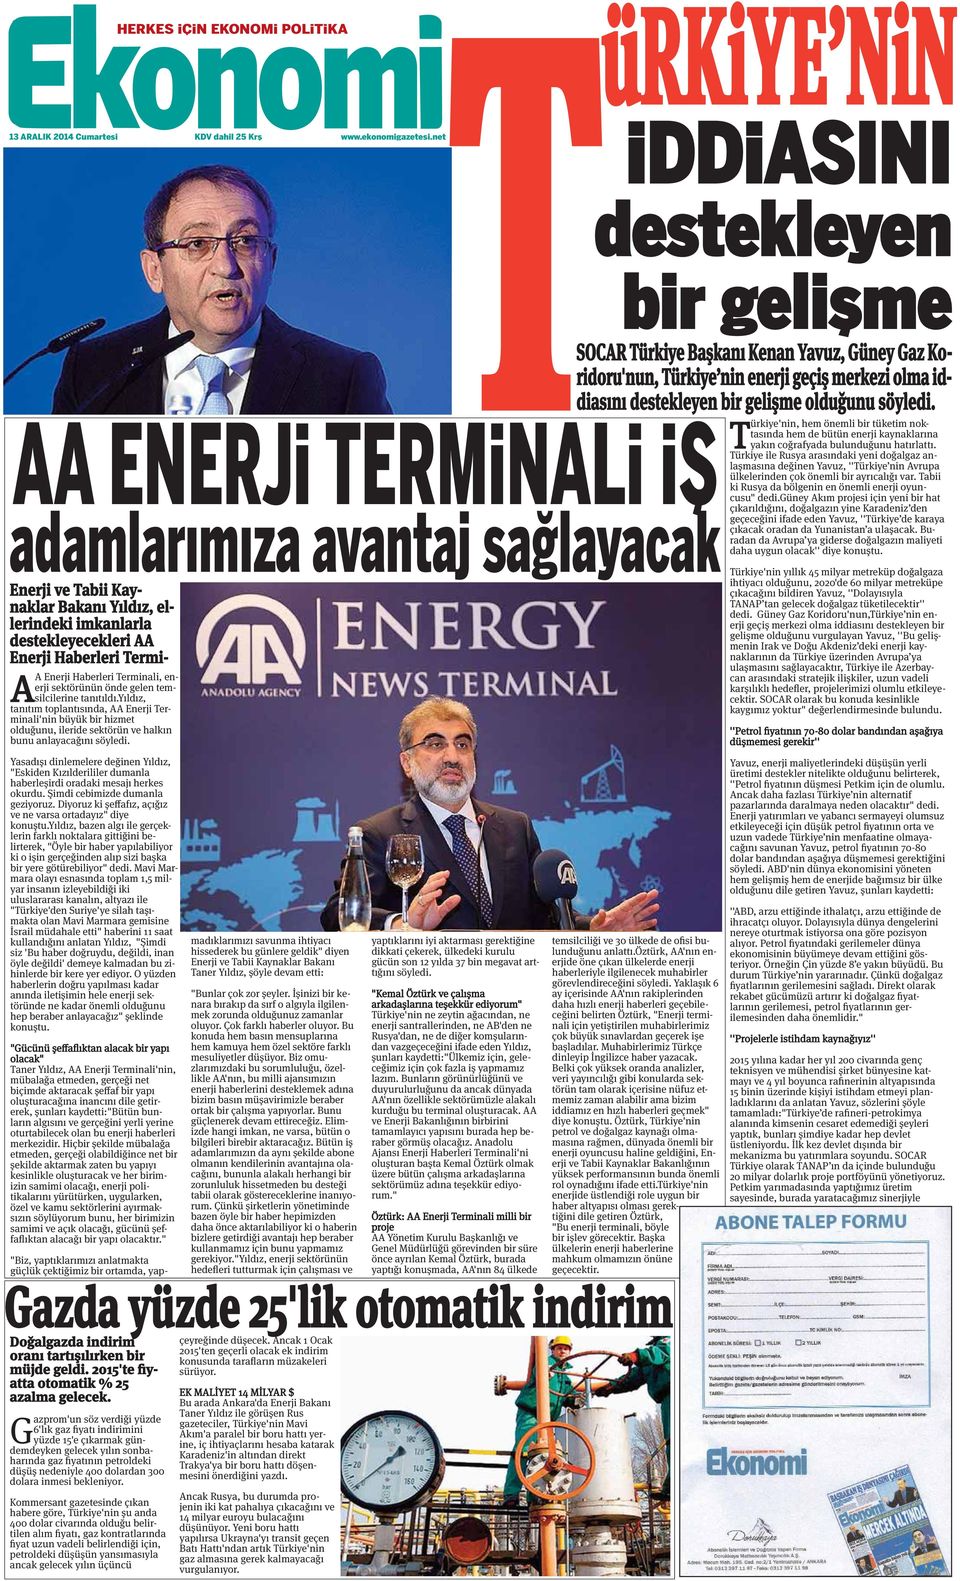 AA ENERJi TERMiNALi iş T ürkiye'nin, hem önemli bir tüketim noktasında hem de bütün enerji kaynaklarına yakın coğrafyada bulunduğunu hatırlattı.